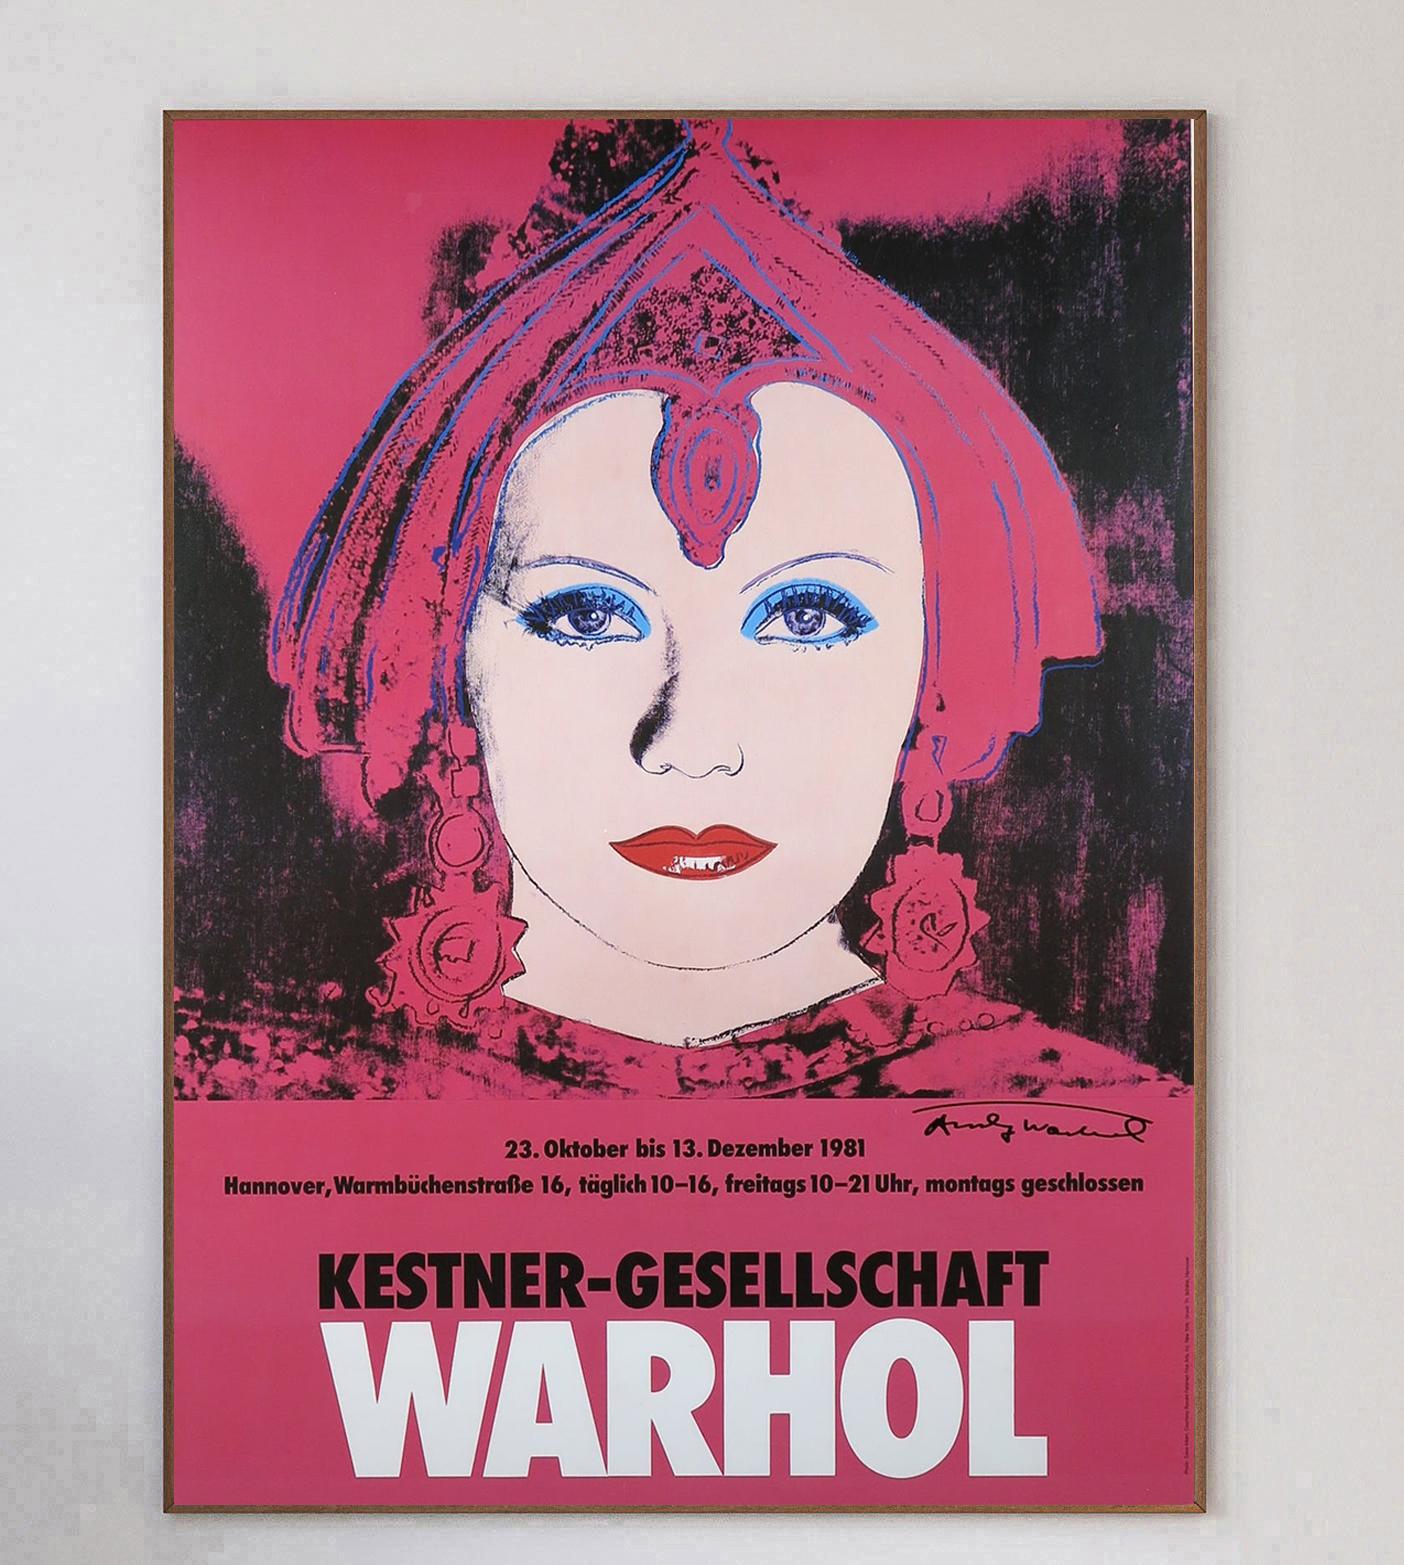 Dieses wunderbare Plakat wurde für die Andy-Warhol-Ausstellung in der Kestner-Gesellschaft in Hannover, Deutschland, geschaffen. Die Ausstellung lief von Oktober bis Dezember 1981 und zeigte einige der wichtigsten Werke des Künstlers.

Diese